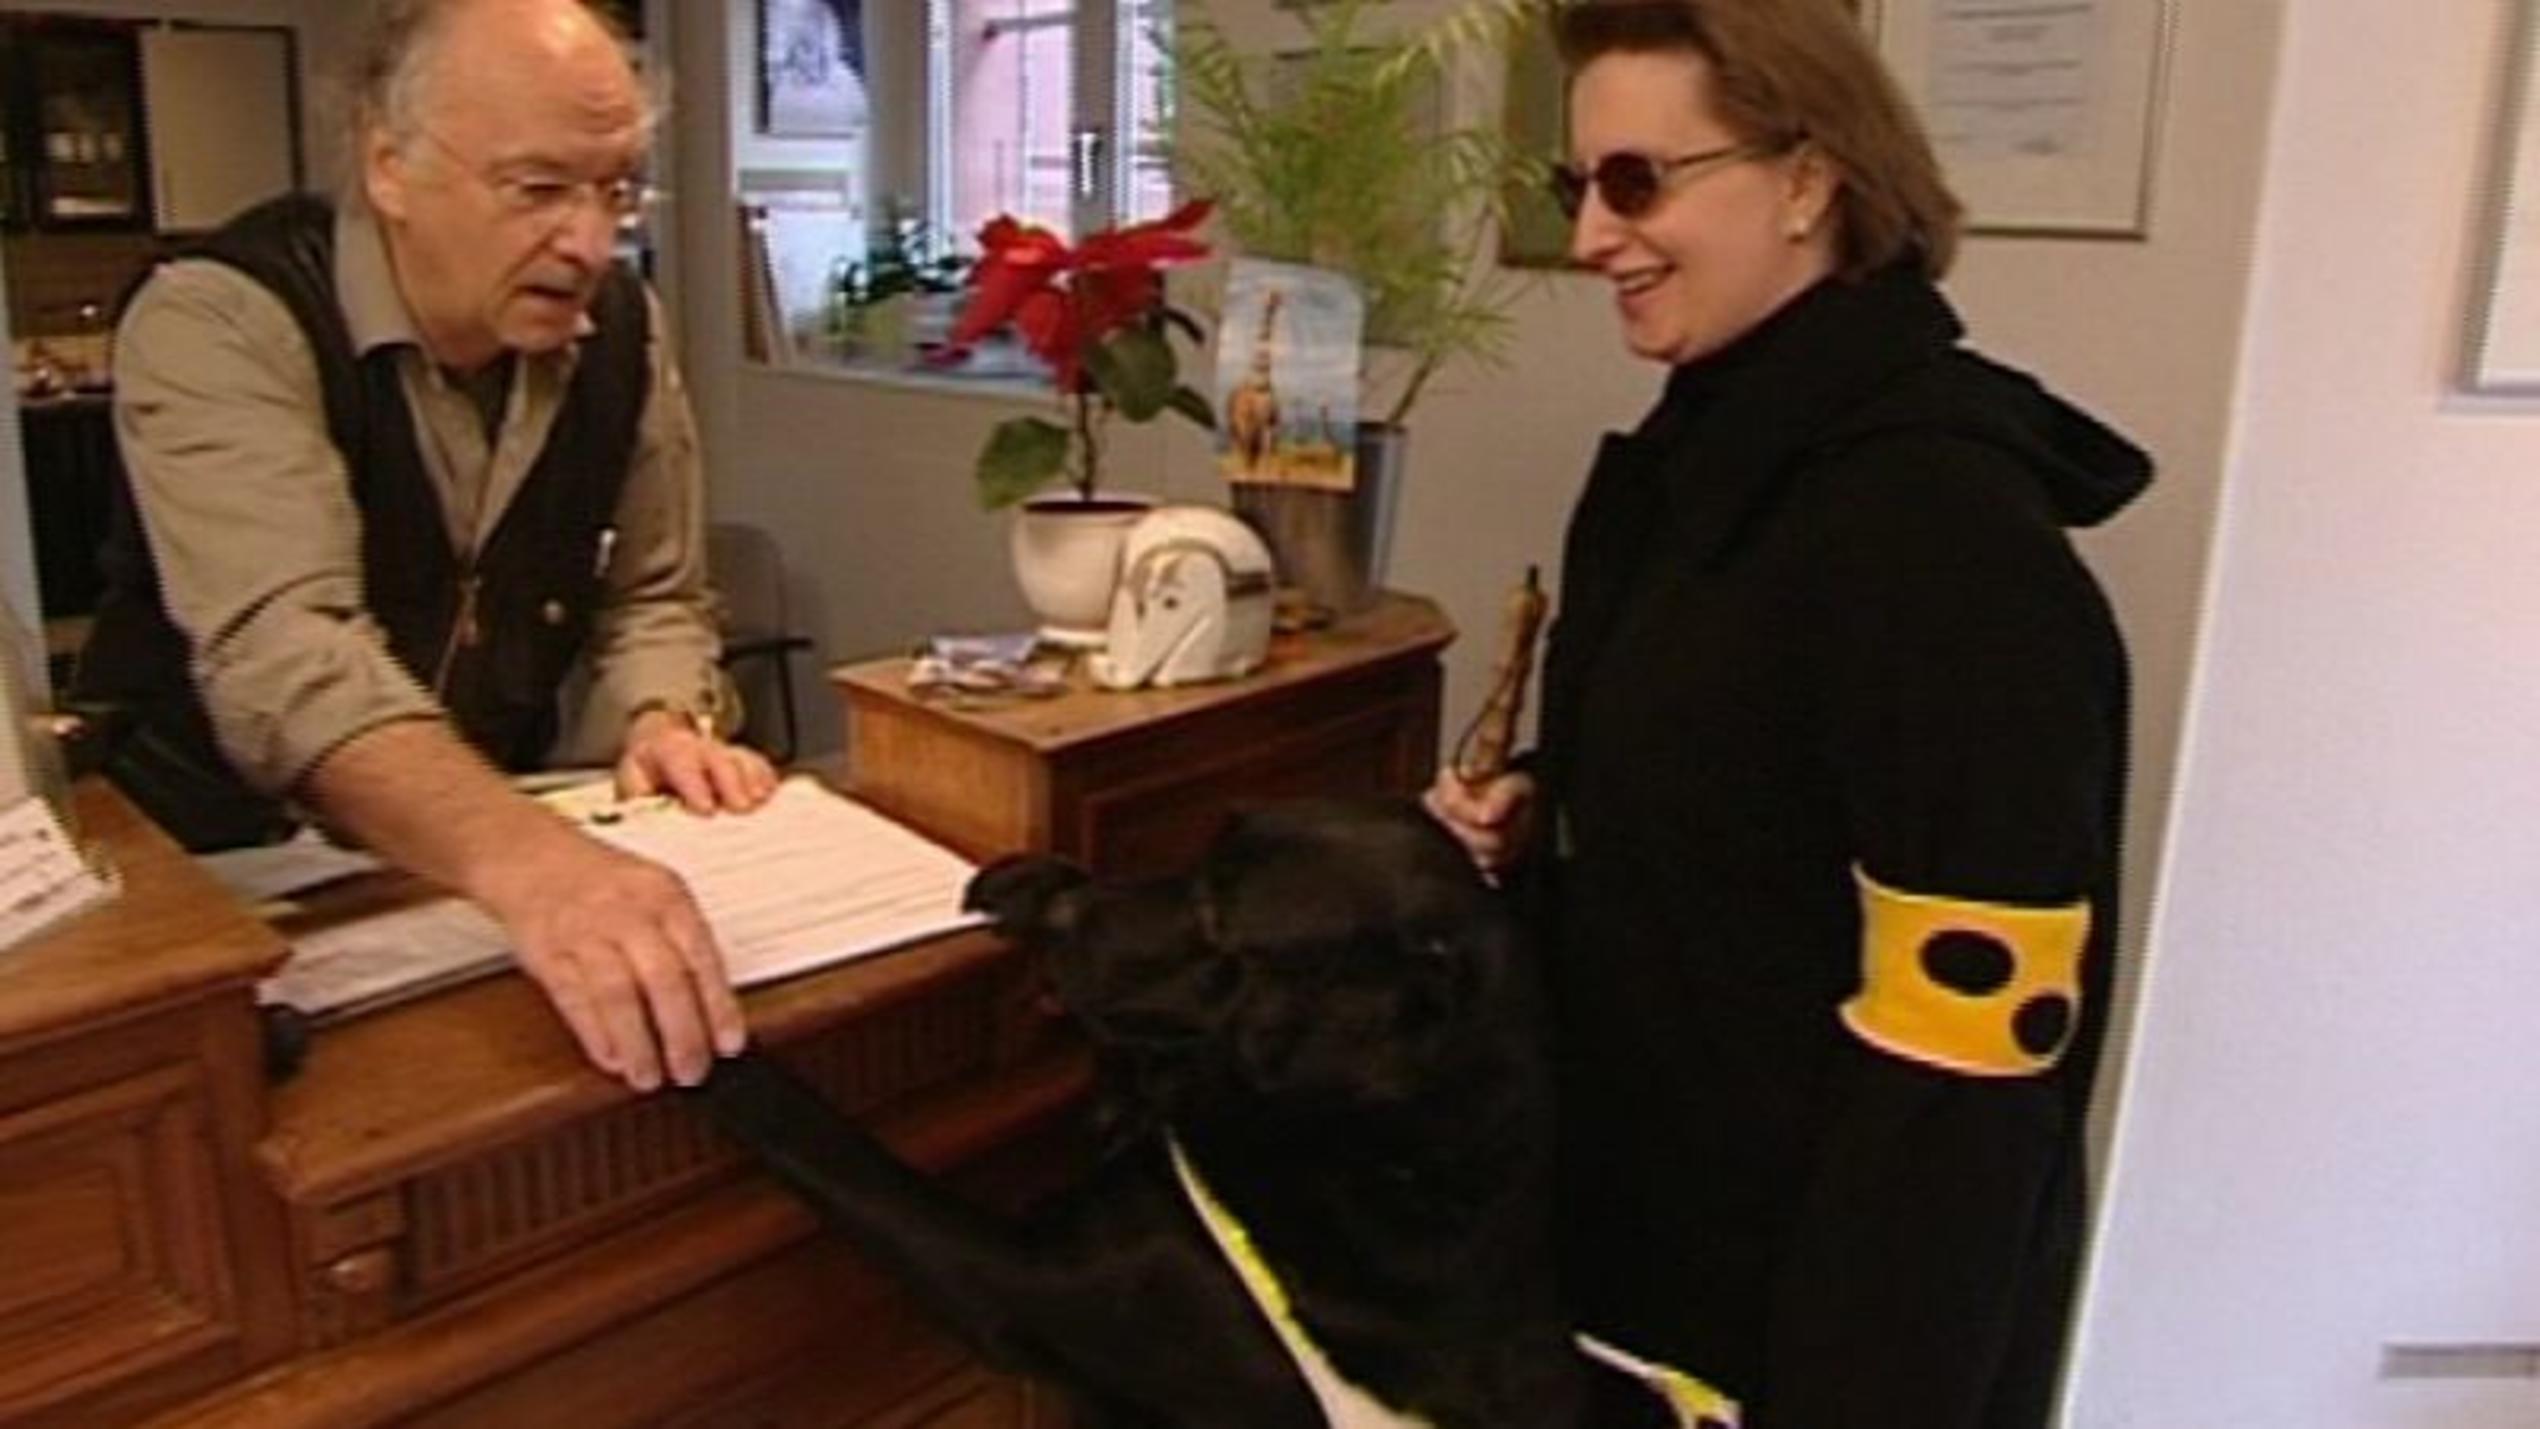 hundkatzemaus-Tierarzt Dr. Wolf untersucht einen Blindenführhund. Foto: VOX/VP